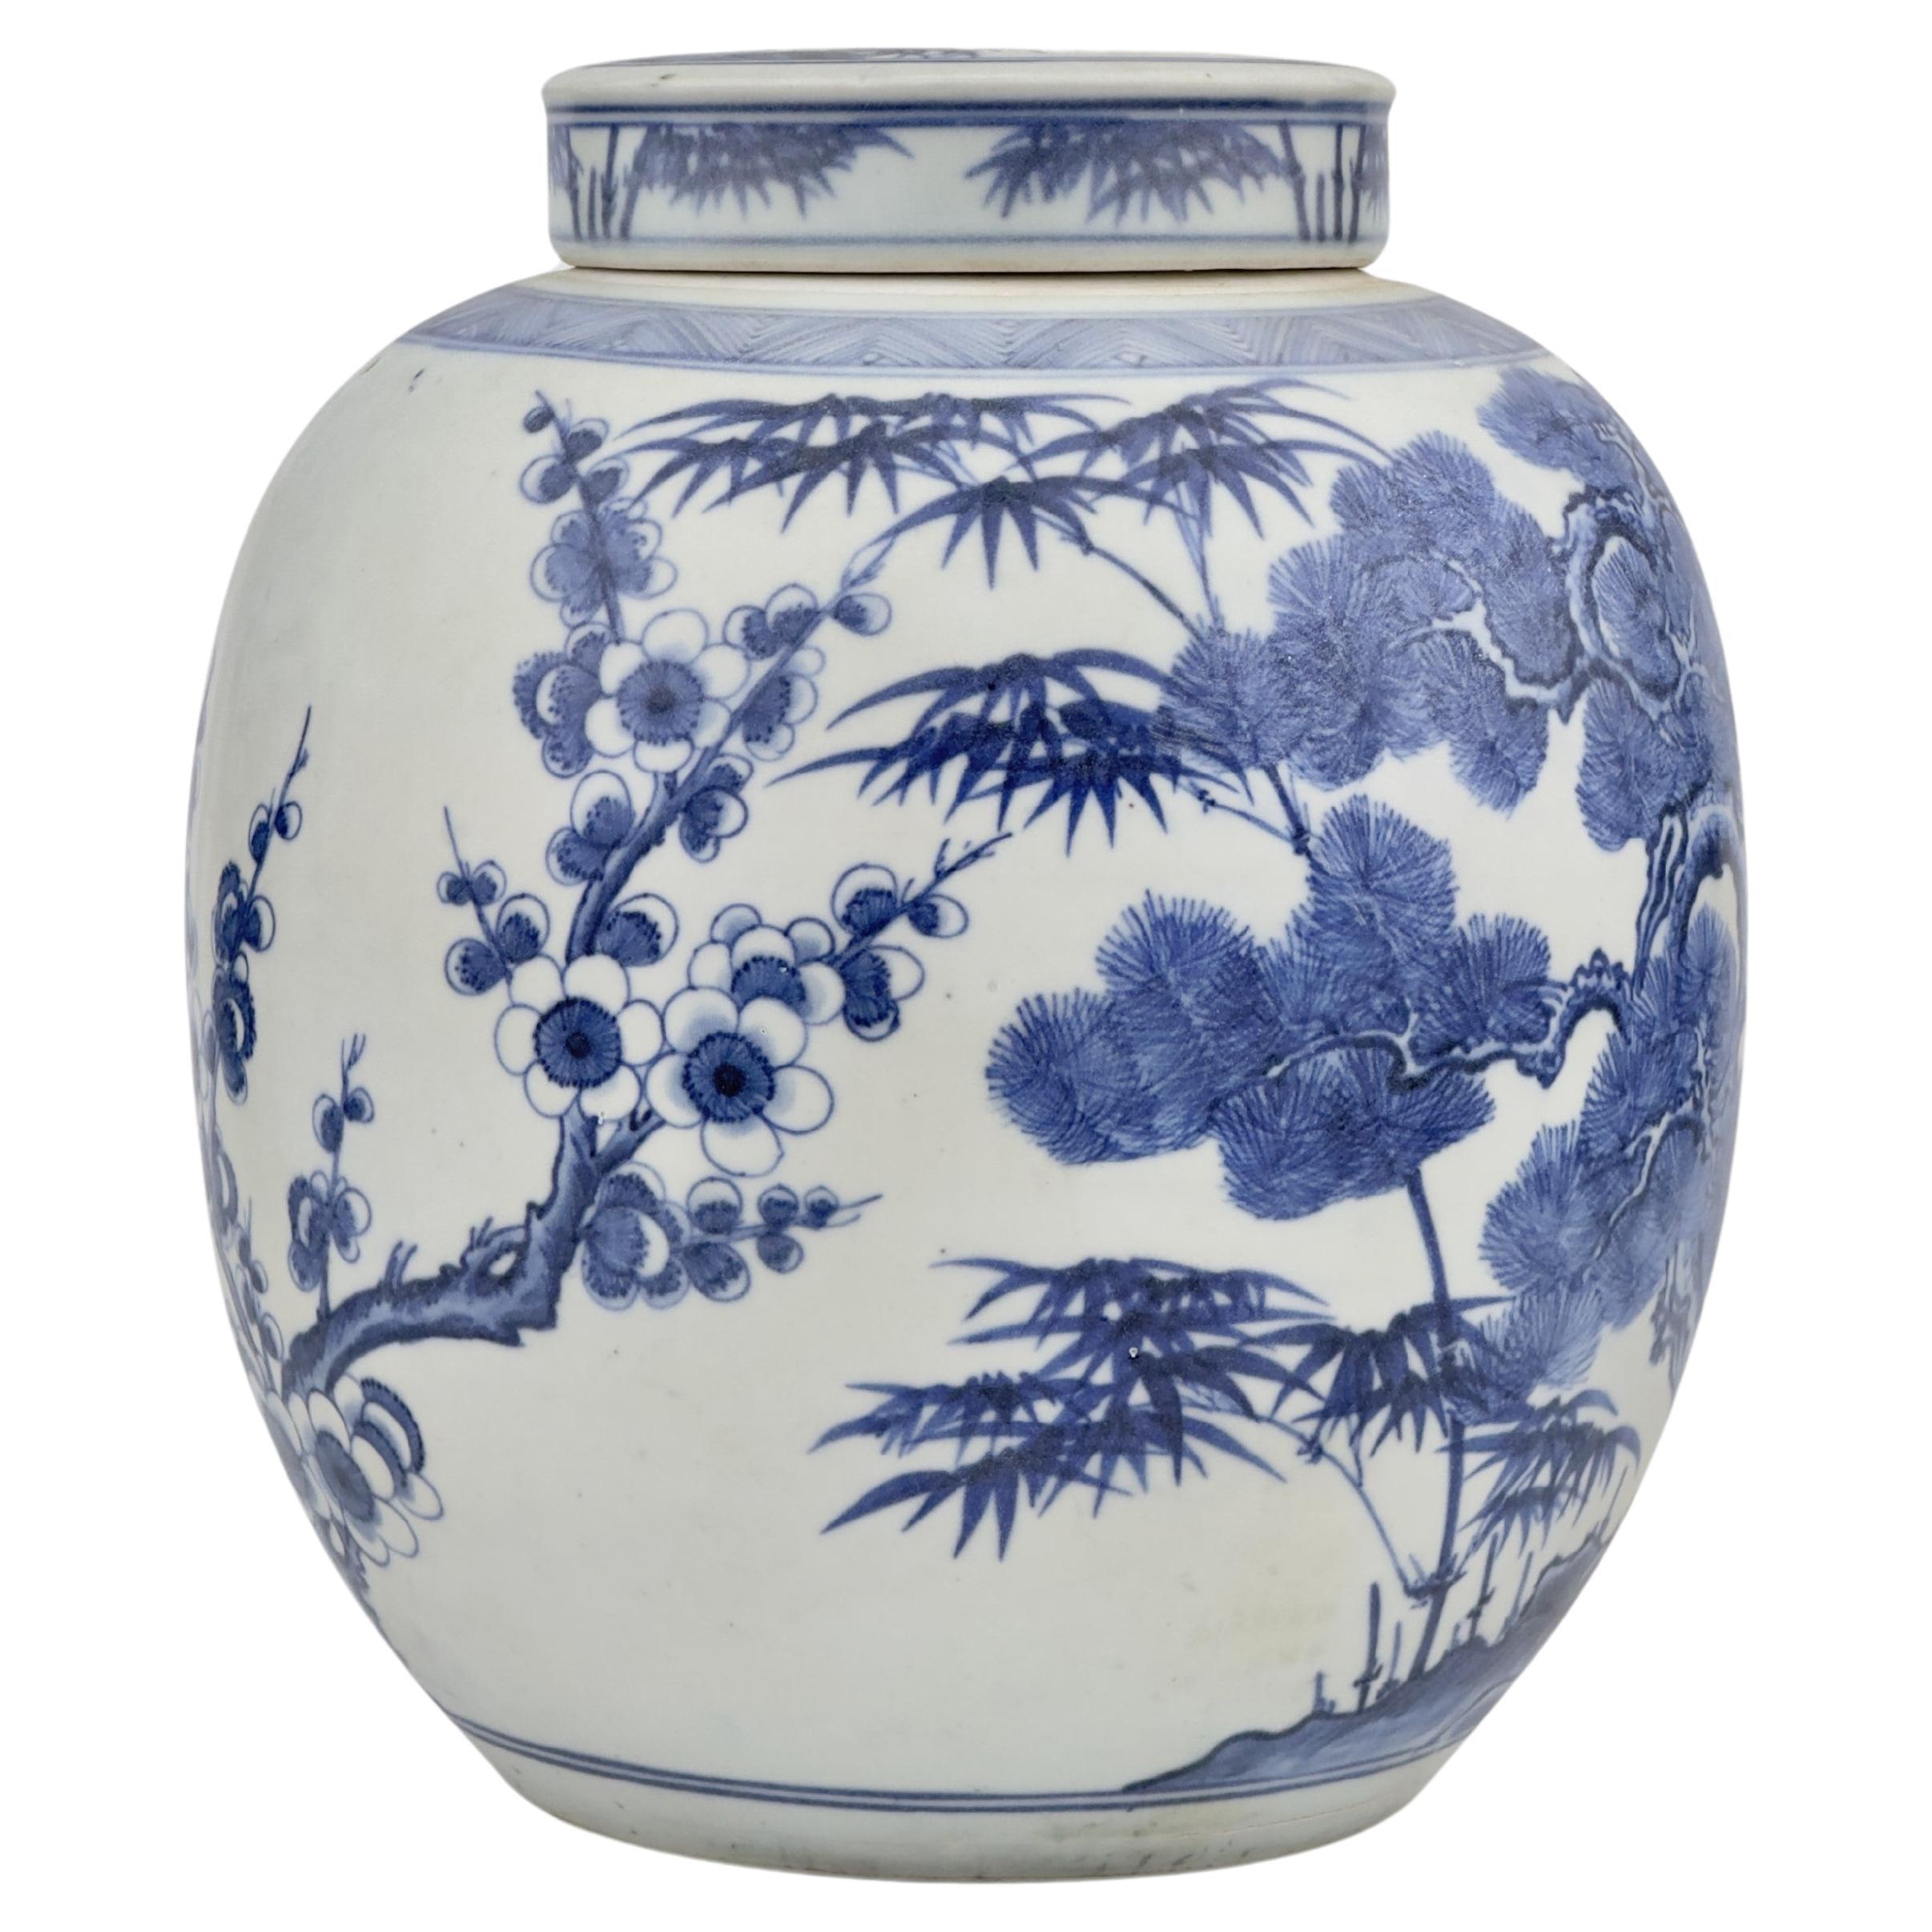 'Three Friends Of Winter' Motif Jar, C 1725, Qing Dynasty, Yongzheng Era